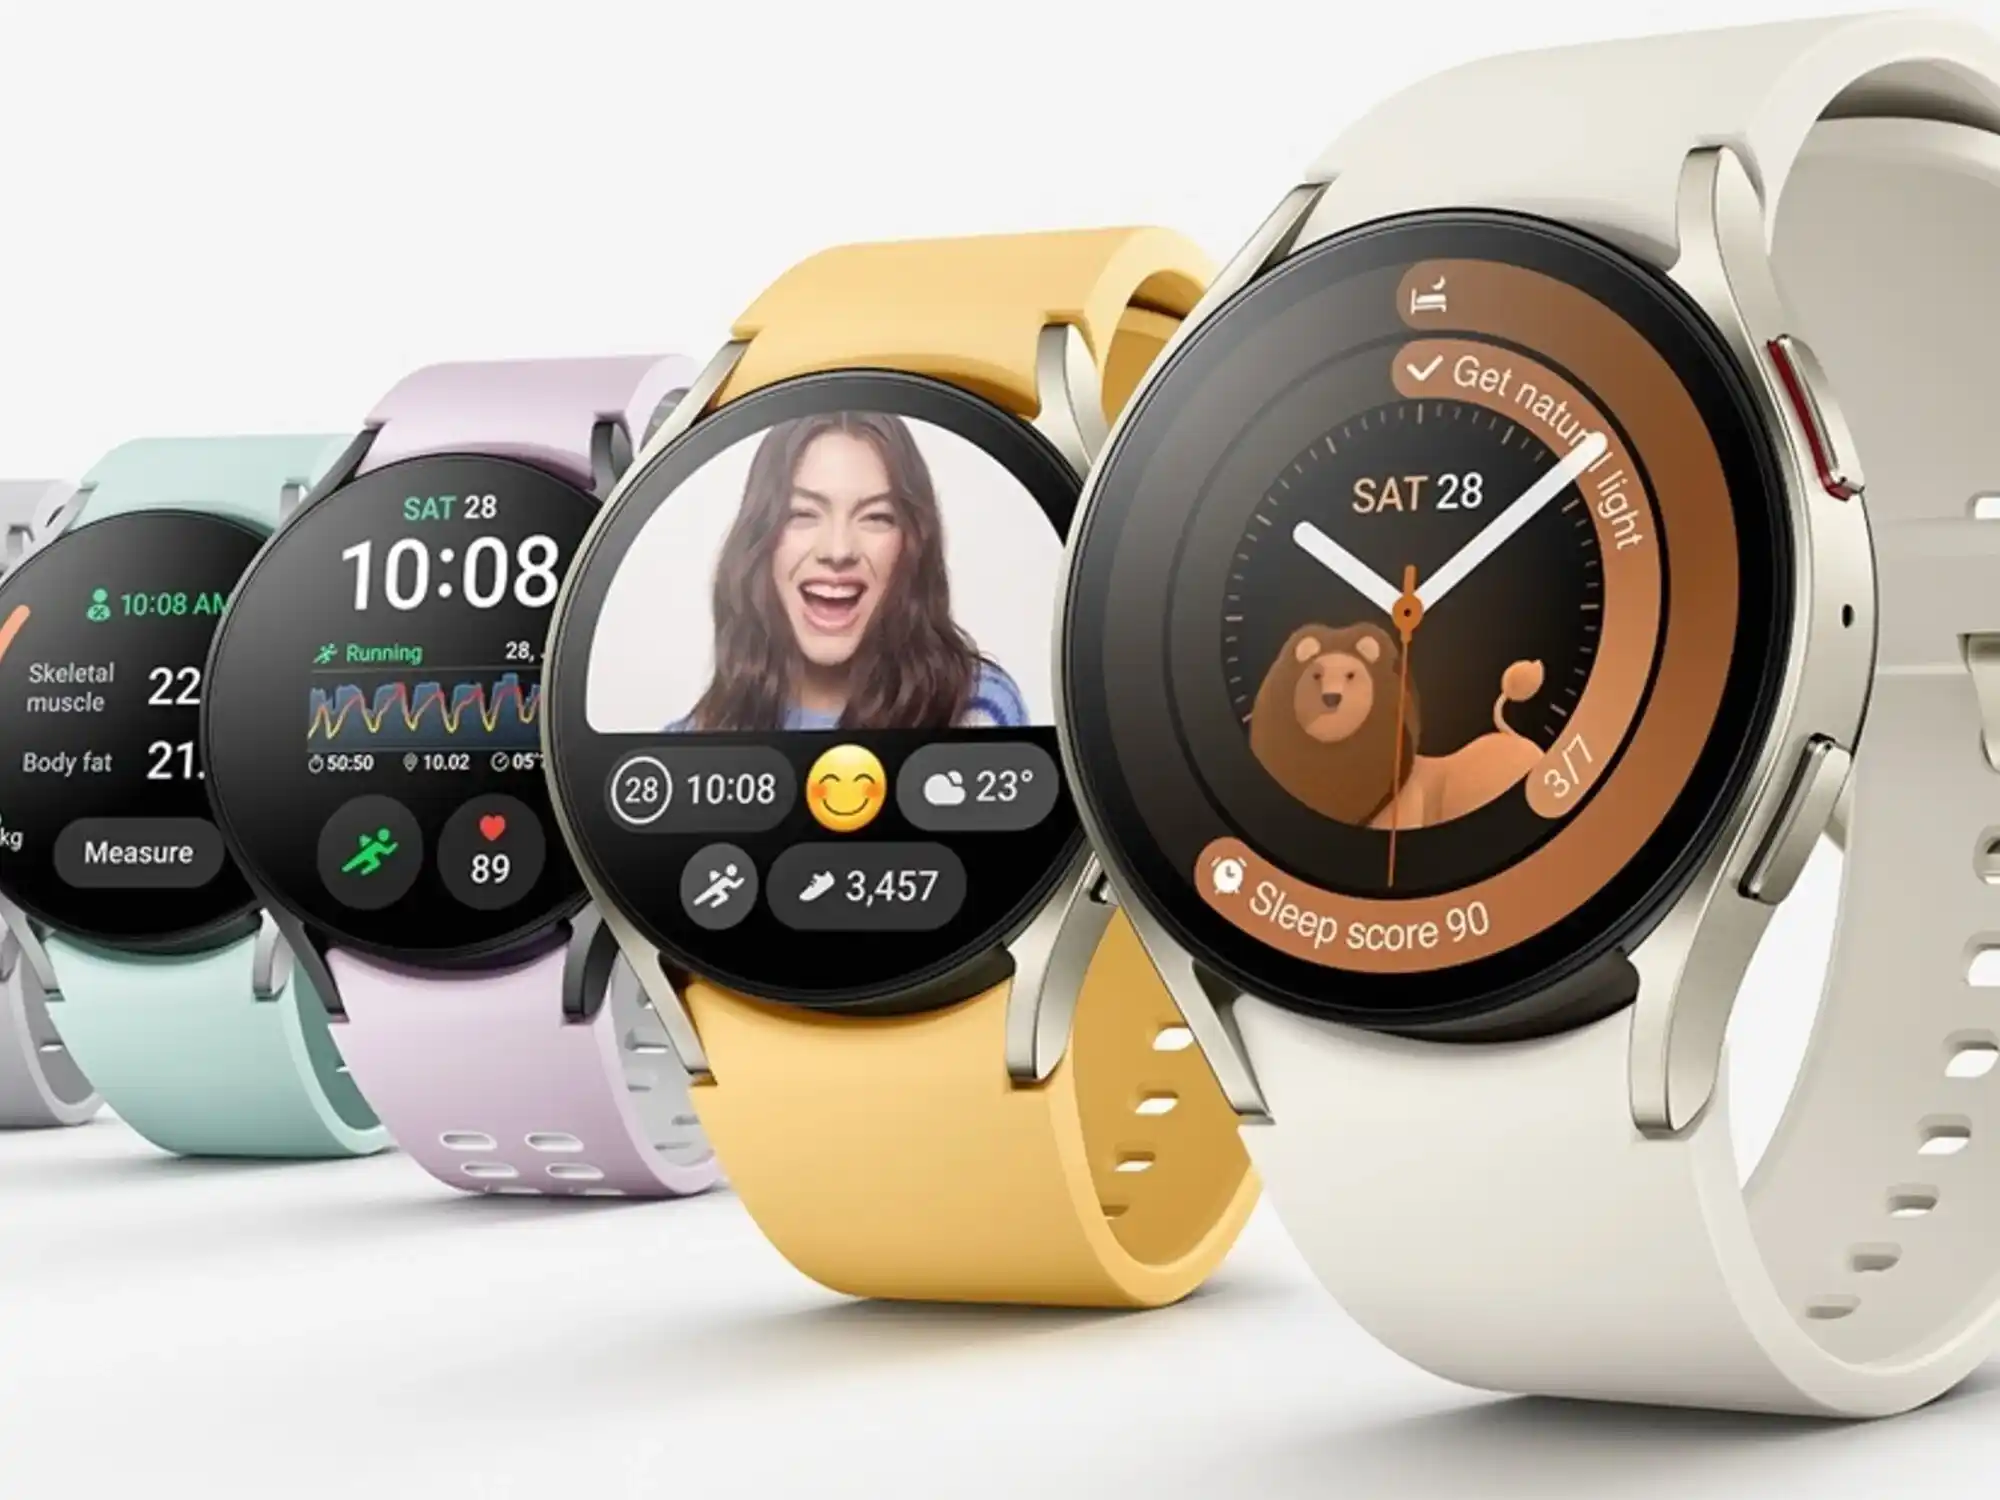 Samsung smartwatches